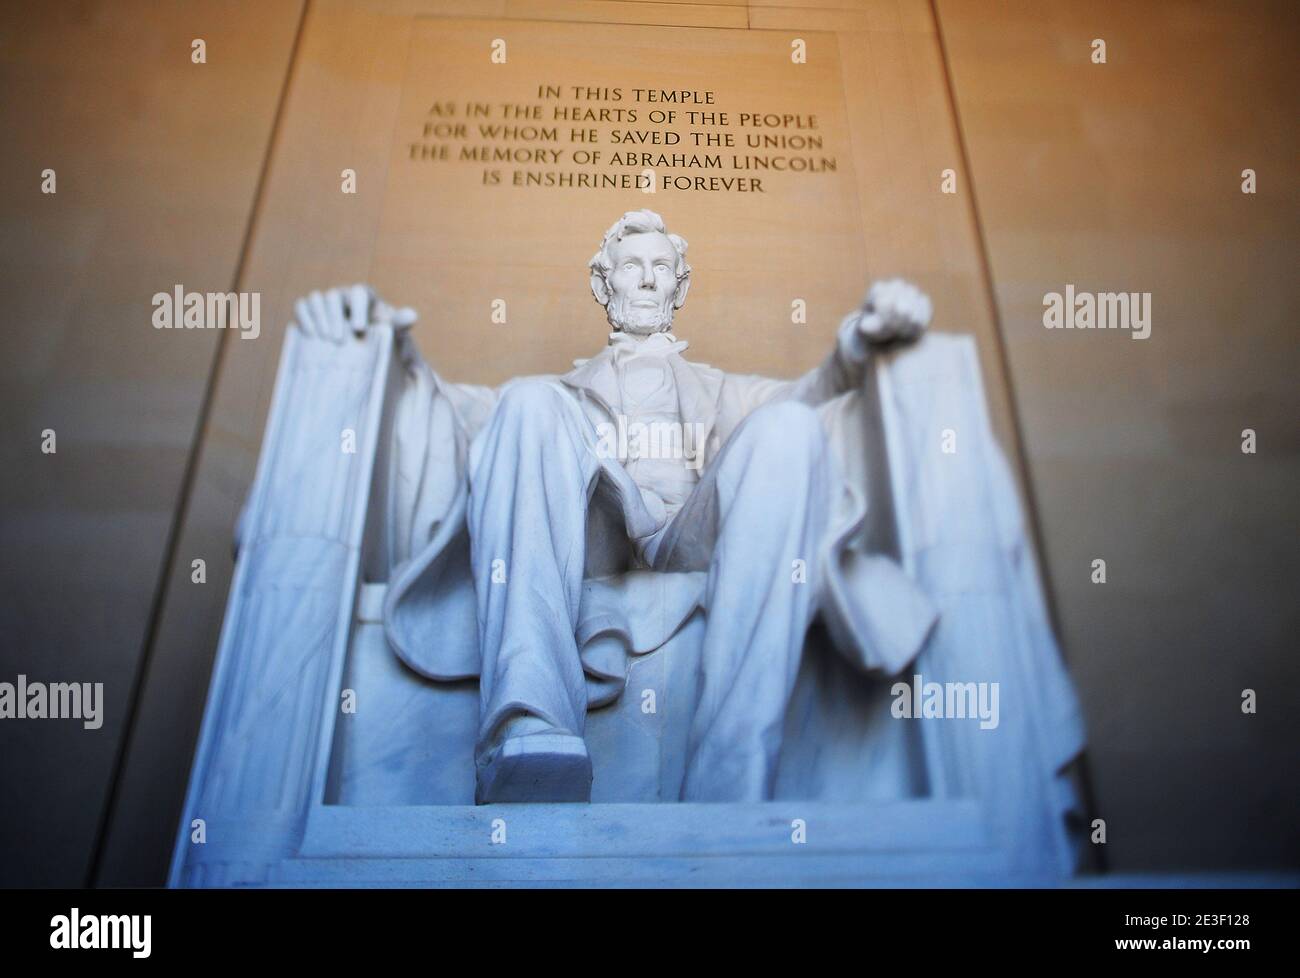 La estatua del 16º Presidente de los EE.UU. Abraham Lincoln se ve en el interior del Lincoln Memorial el 12 de febrero de 2009 en Washington, DC. La Comisión Bicentenario de Abraham Lincoln organizó ceremonias en honor al 200 aniversario del nacimiento de Lincoln. Foto de Olivier Douliery/ABACAPRESS.COM Foto de stock